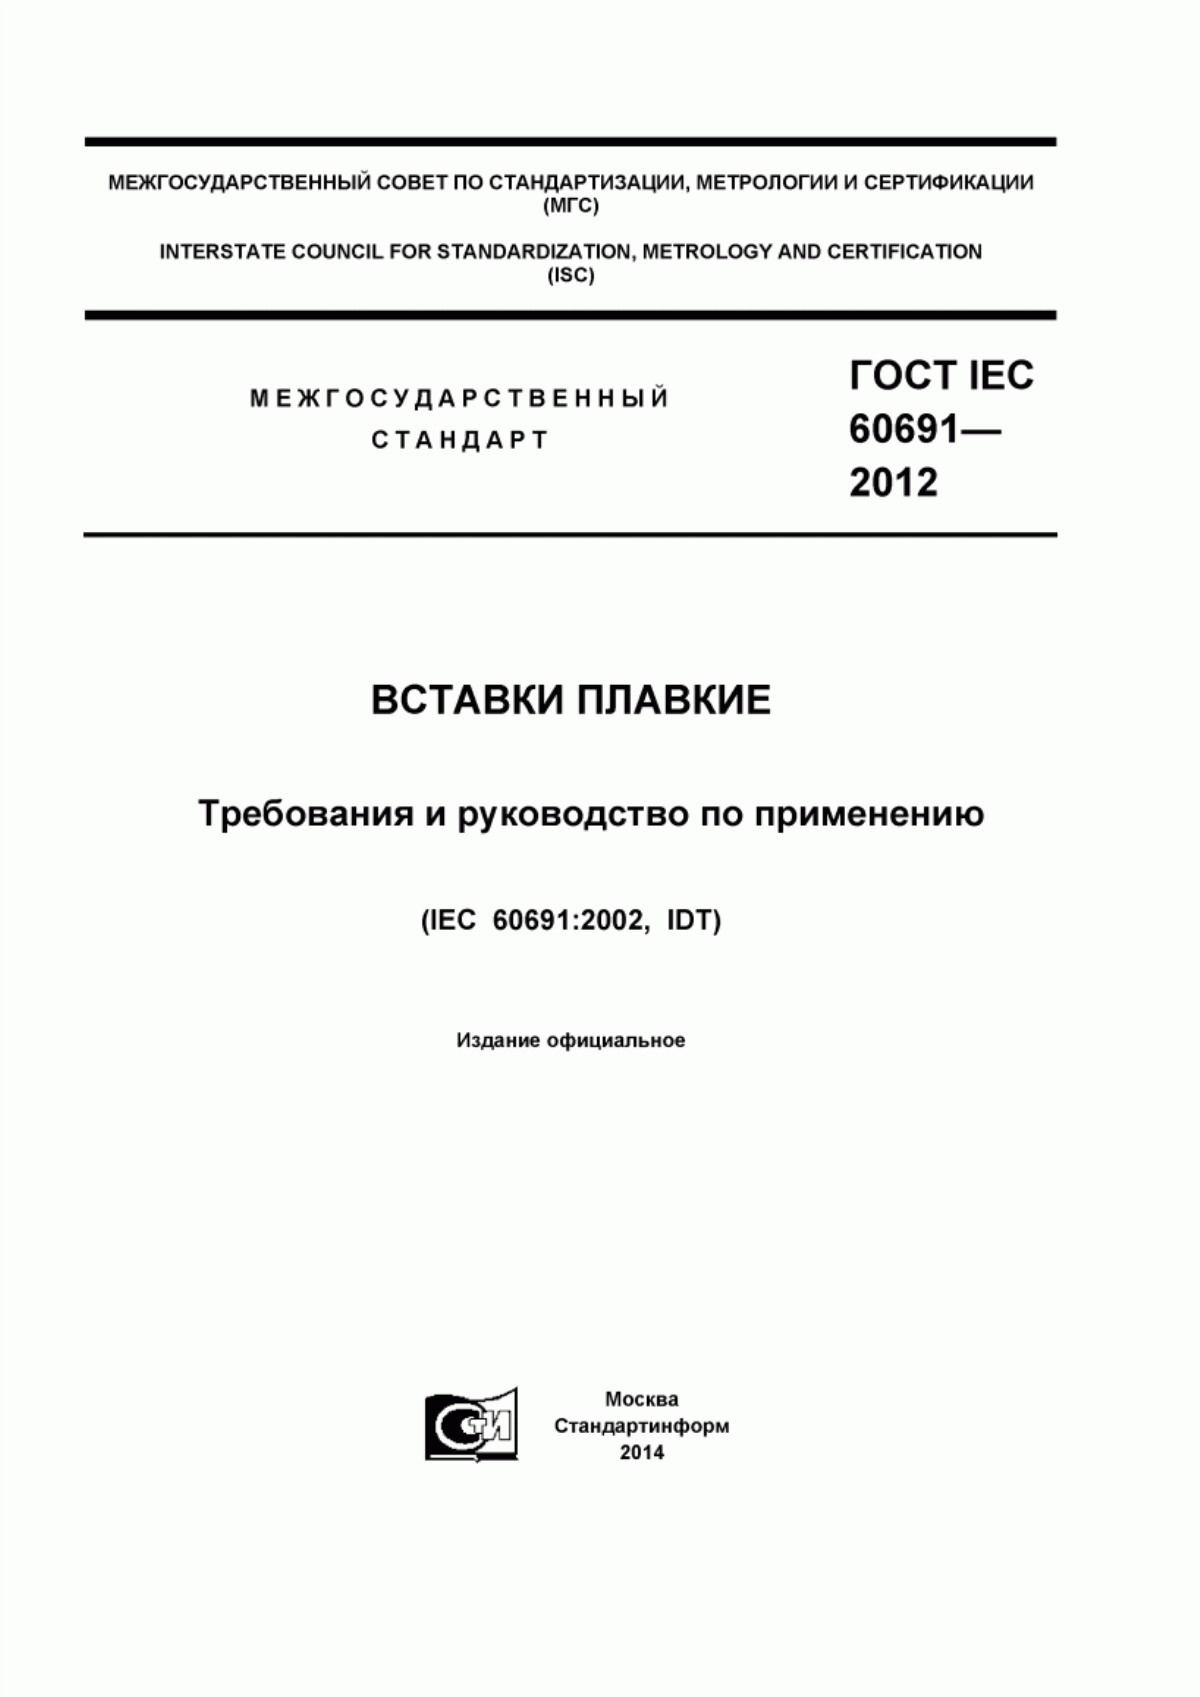 ГОСТ IEC 60691-2012 Вставки плавкие. Требования и руководство по применению